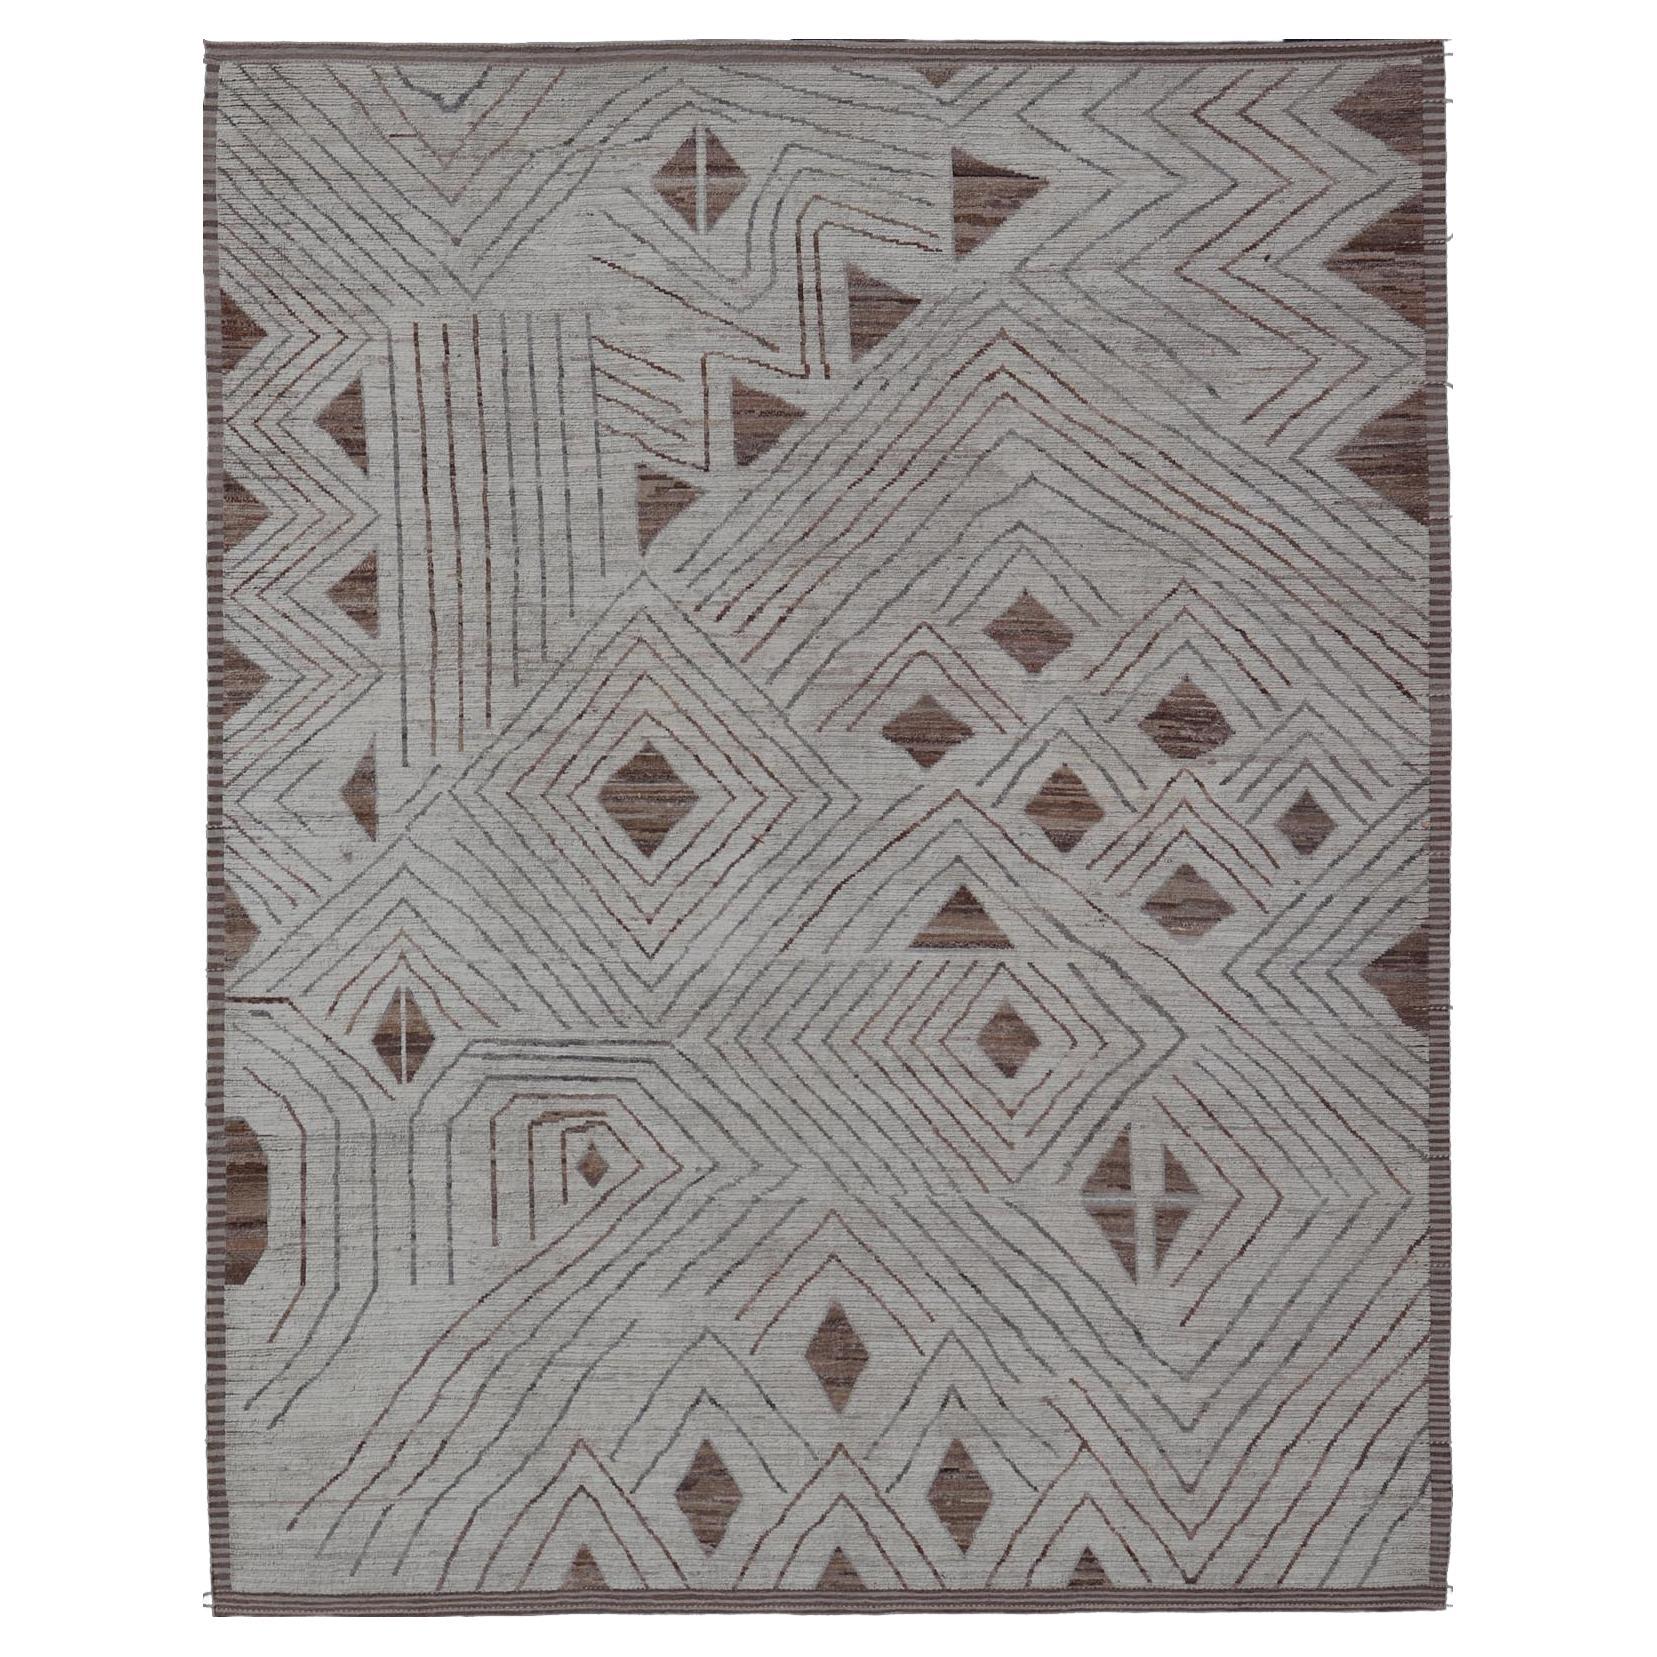 Tapis moderne raffiné dans des tons blancs et brun clair avec un design abstrait et géométrique